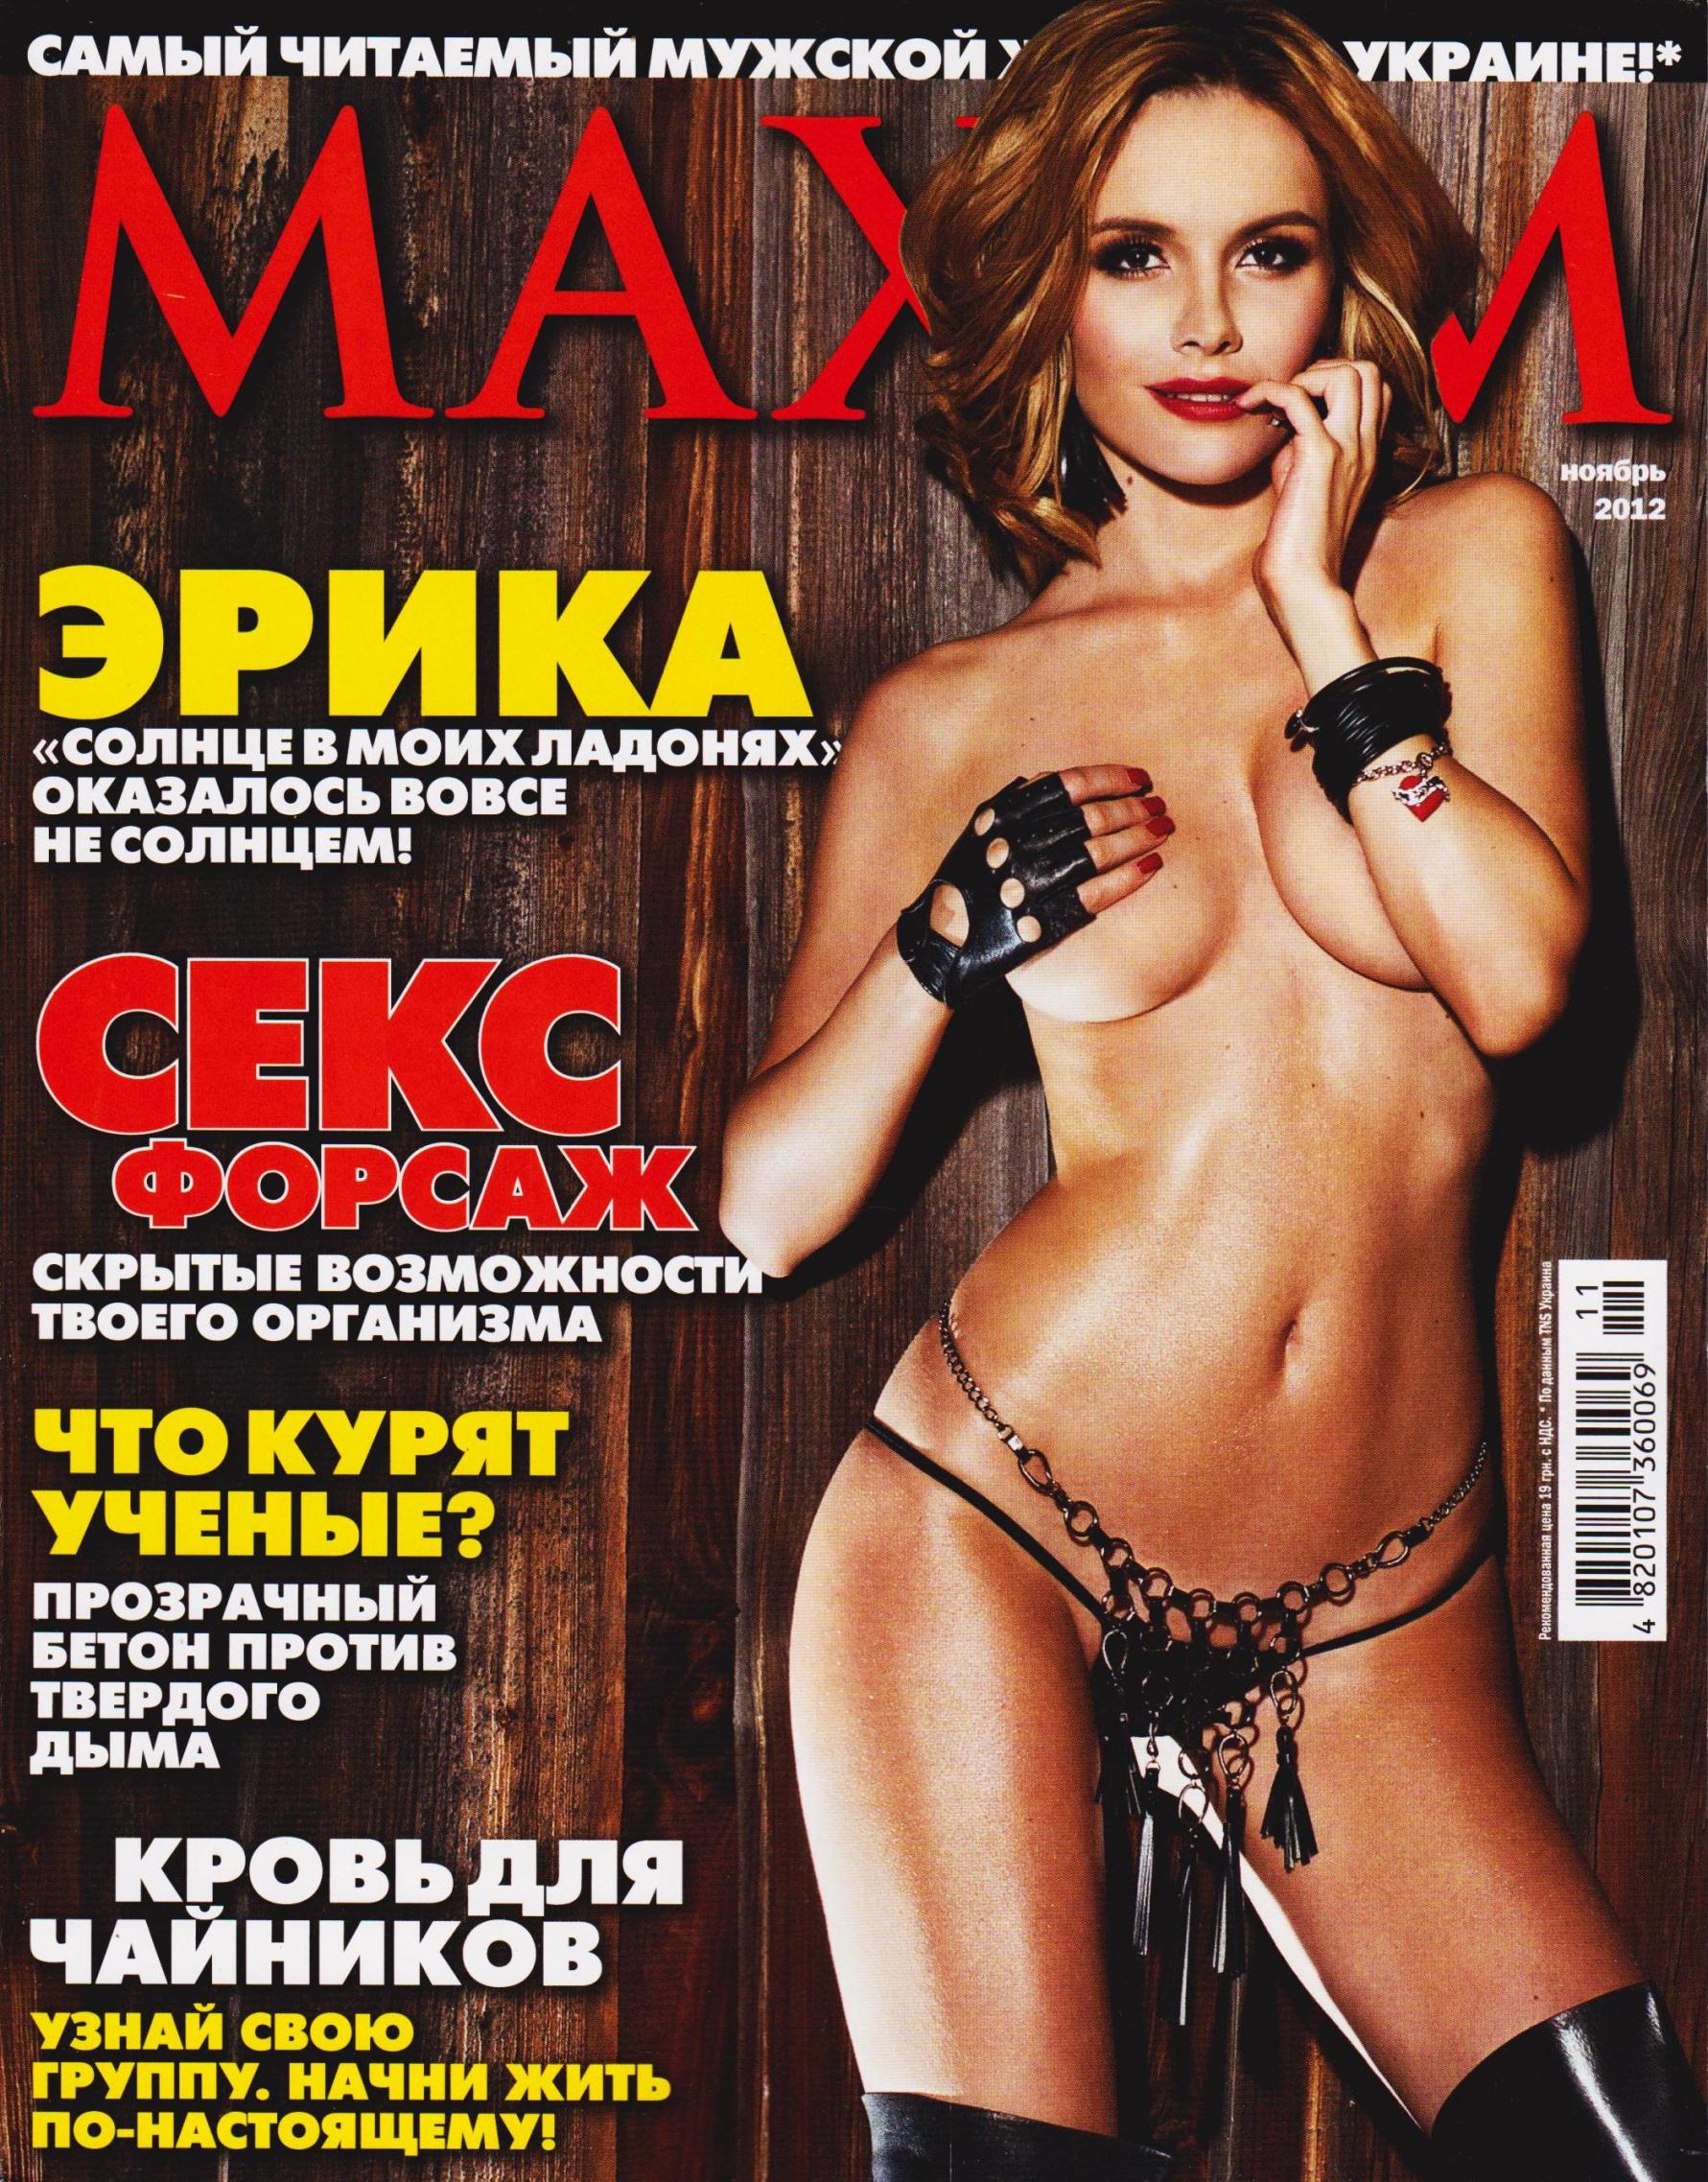 Anastasia Kochetova for Maxim Magazine Ukraine.